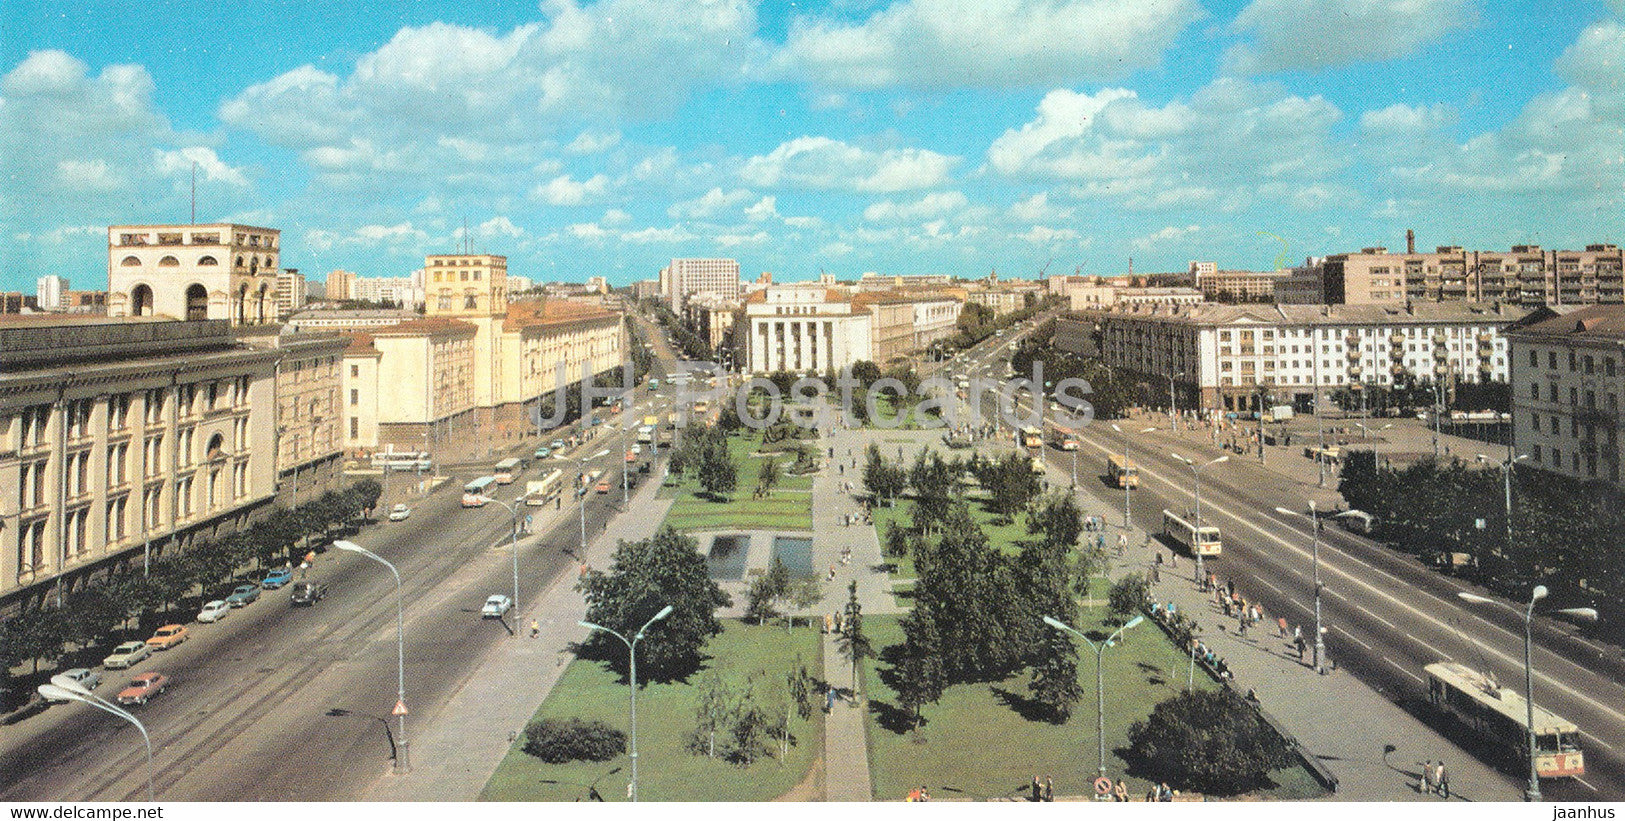 Minsk - Yakub Kolas square - 1983 - Belarus USSR - unused - JH Postcards